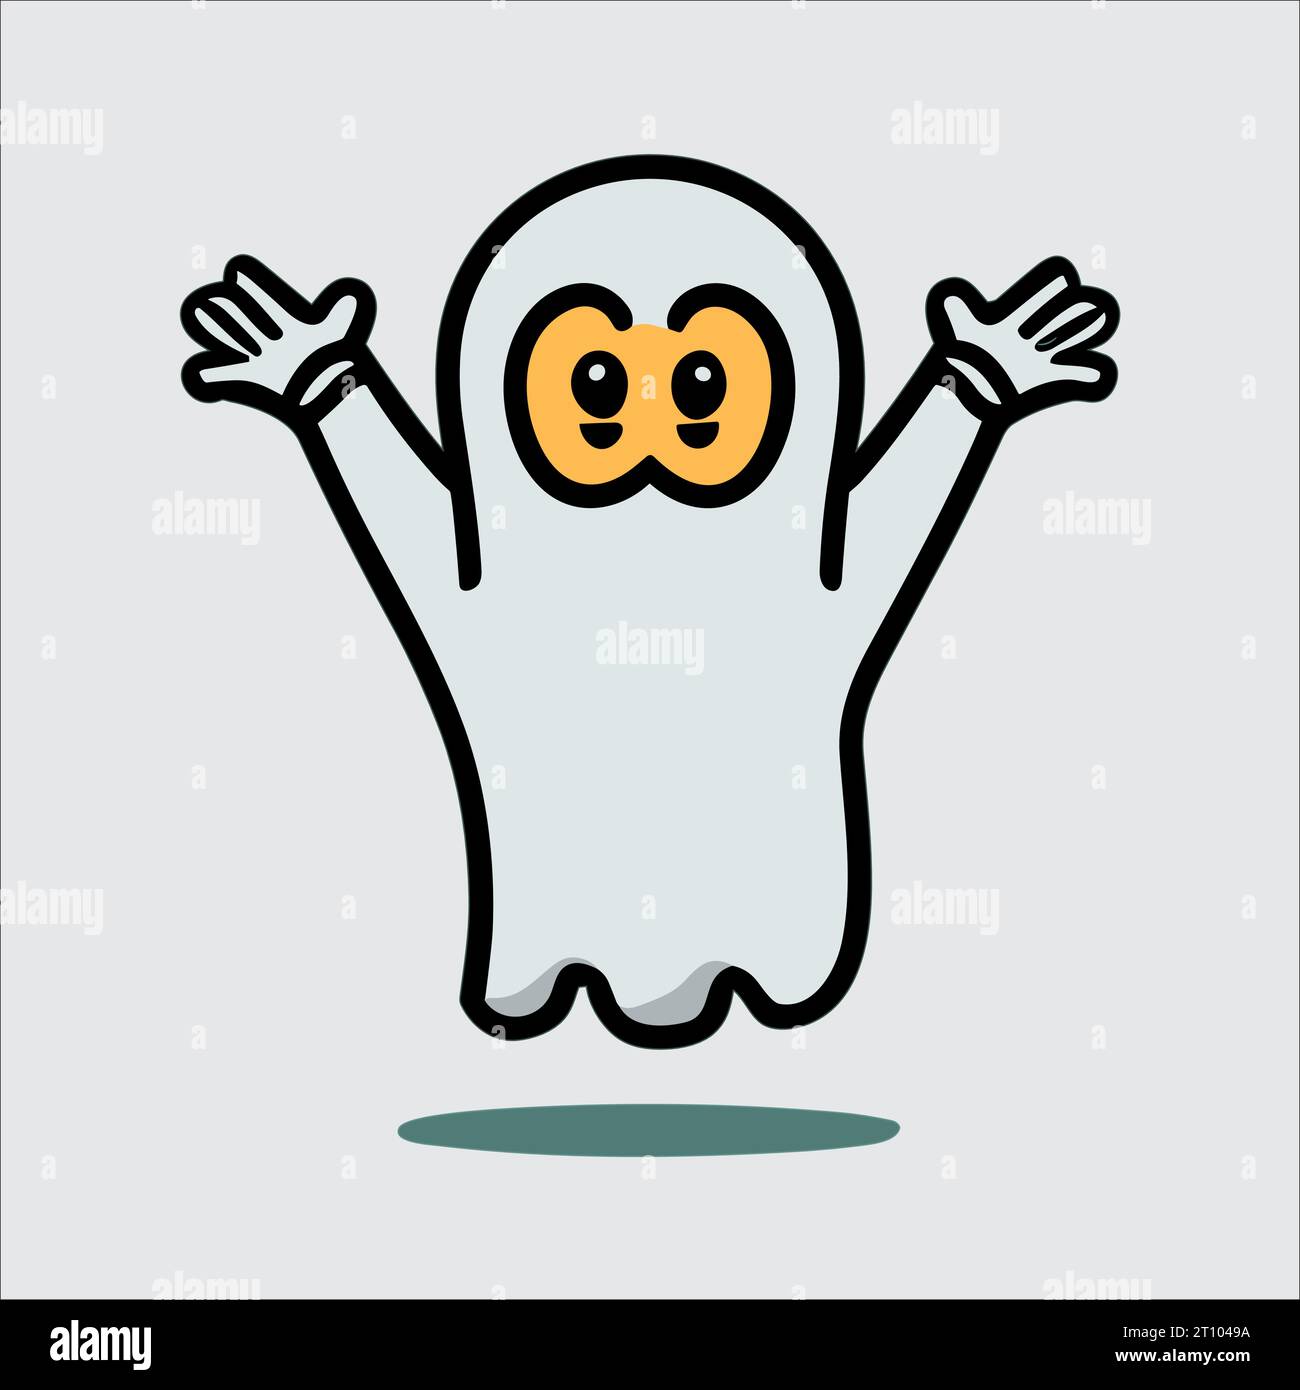 Vecteur fantôme Halloween mignon : graphismes adorables et effrayants pour hanter vos conceptions. Parfait pour les décorations festives! Illustration de Vecteur